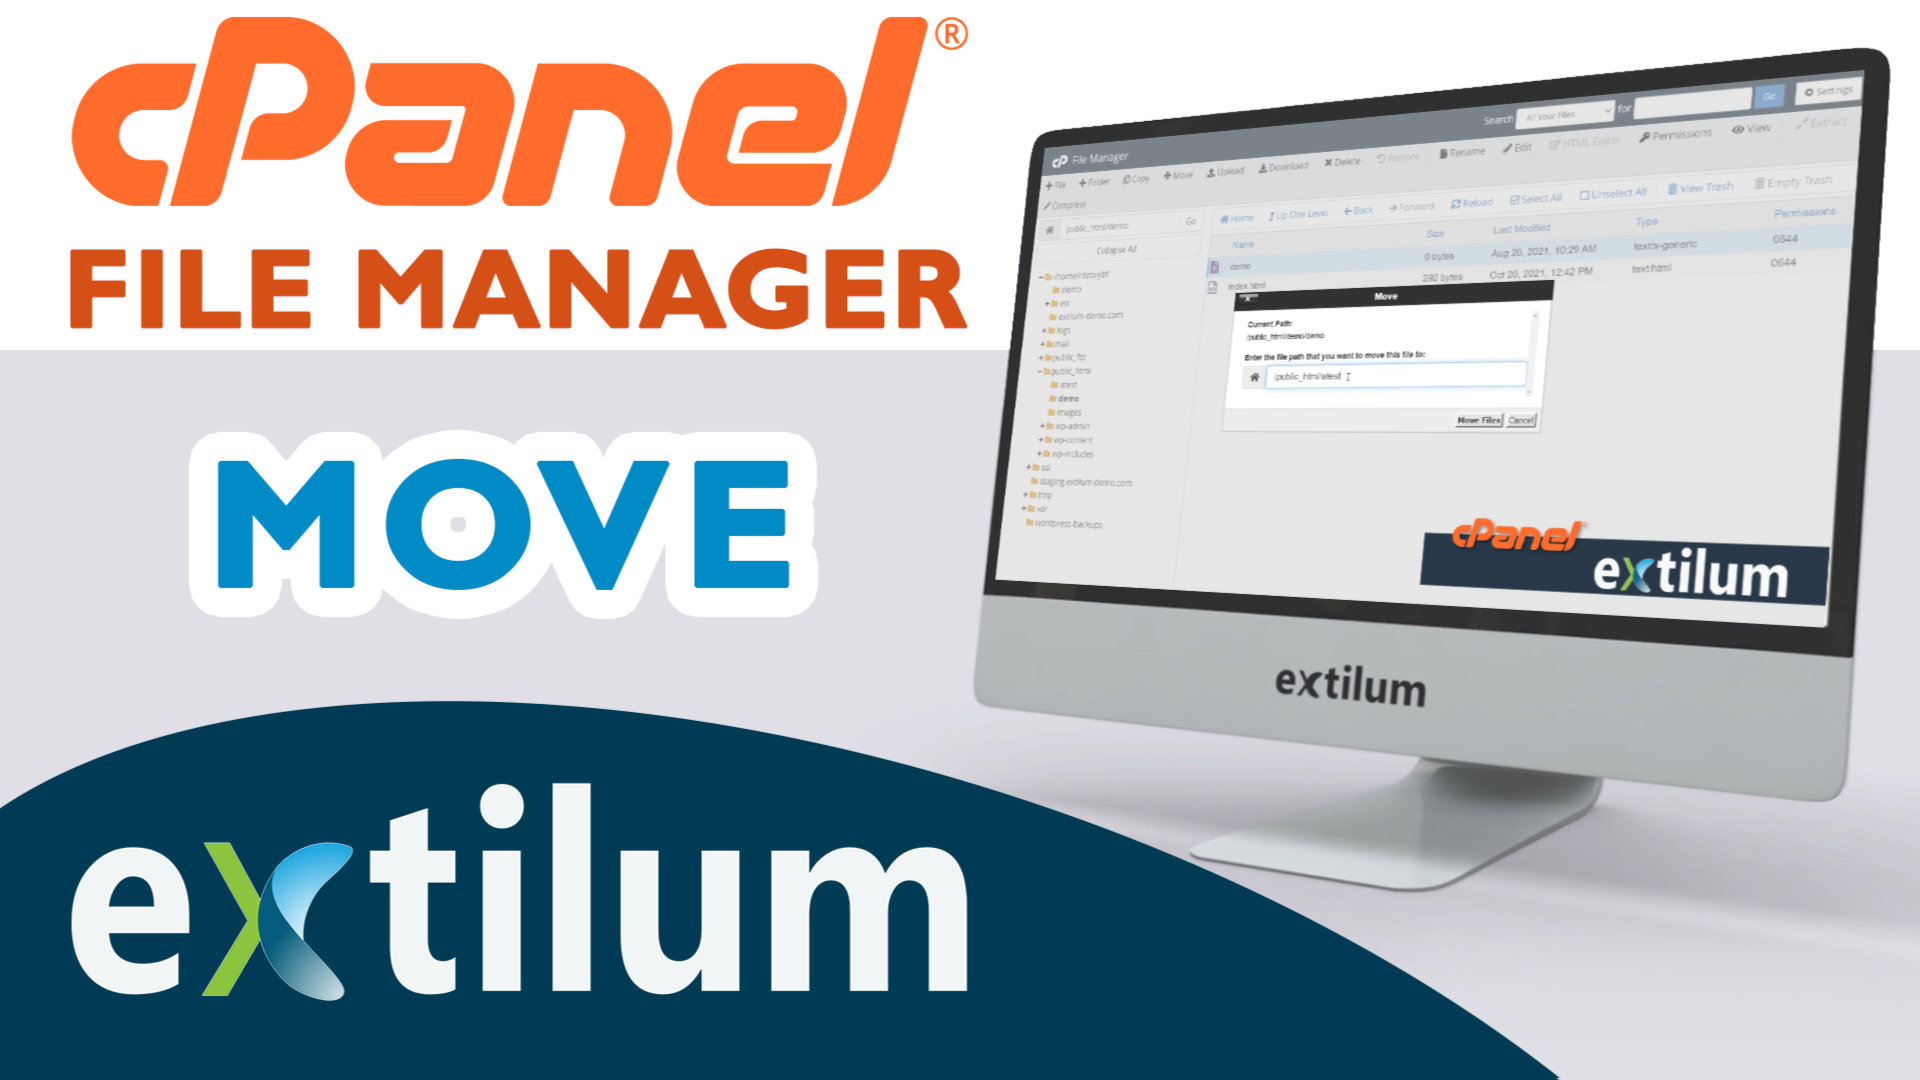 Extilum cpanel - file manager - move